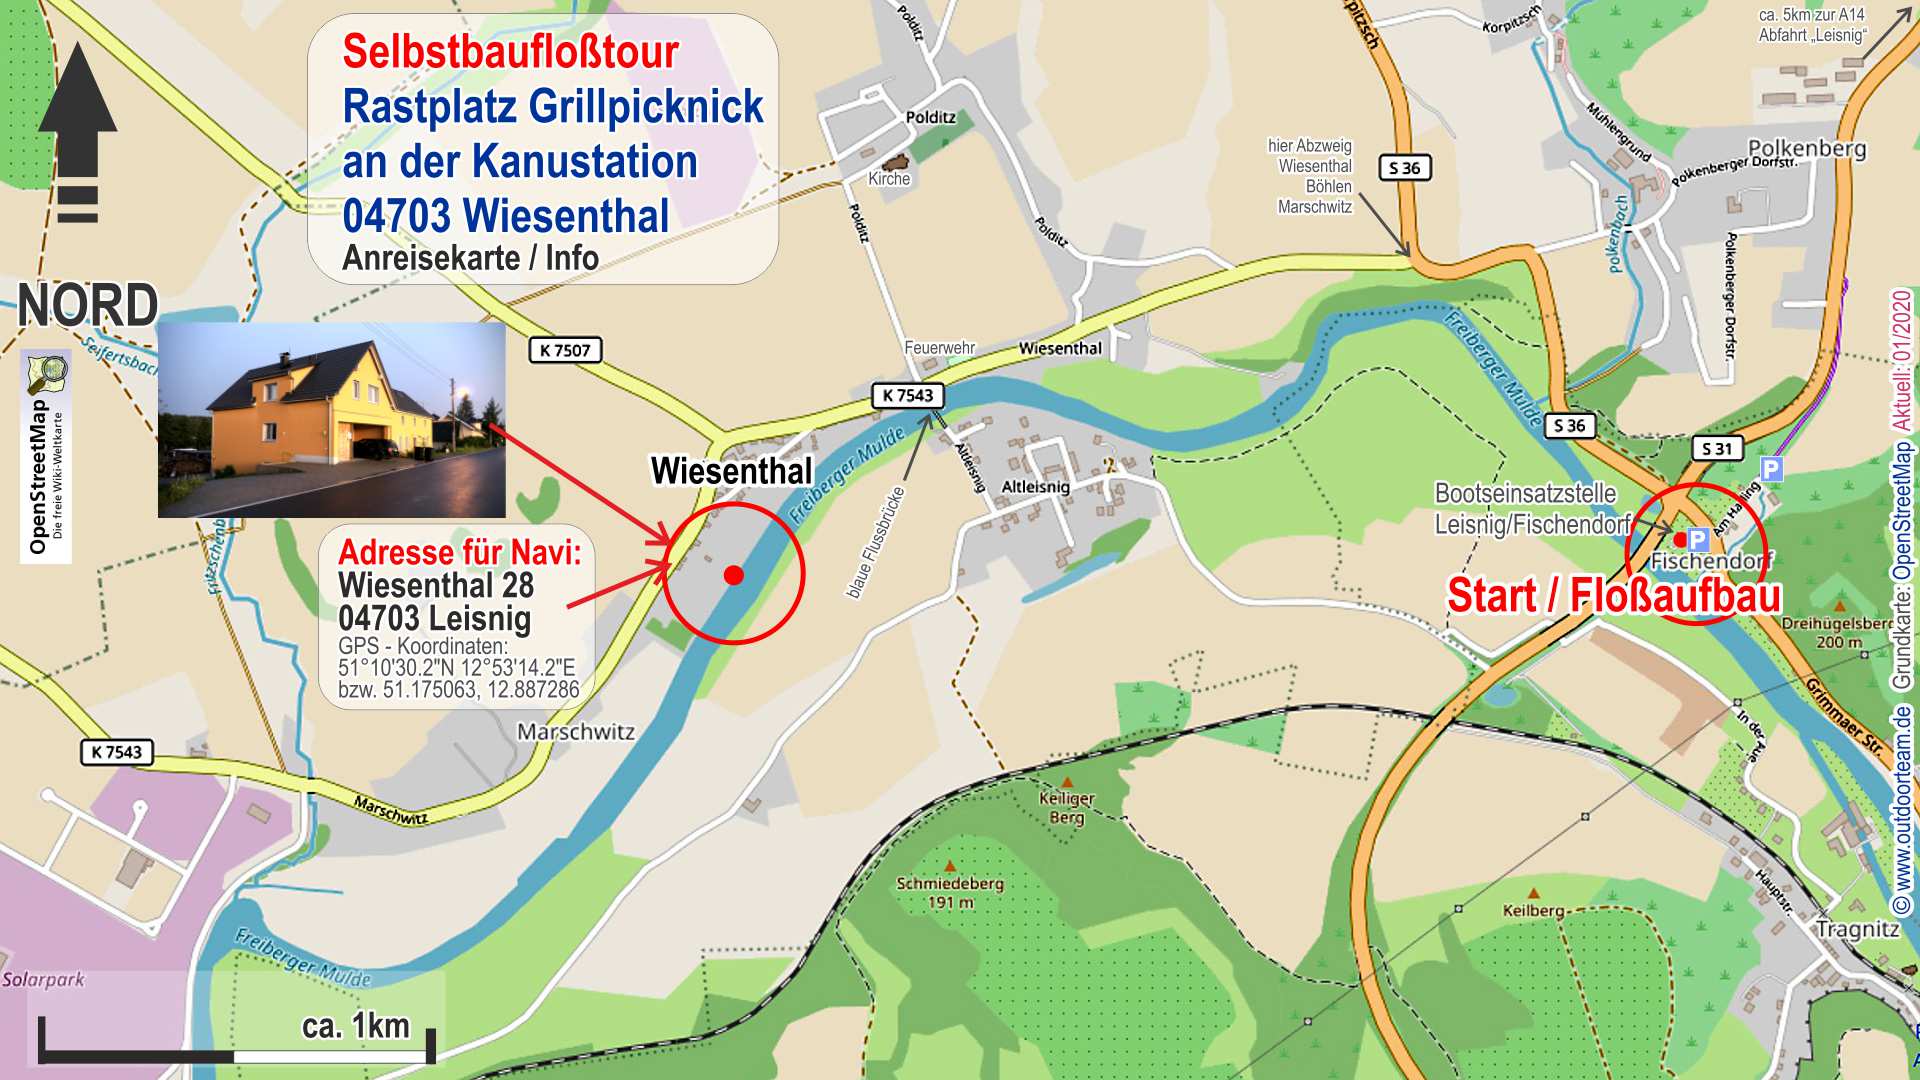 Mittagsraststelle Grillplatz in 04703 Wiesenthal (Gelände der Gruppenherberge) - Detailkarte bzw. genauer Ortsplan mit Navi-Adresse und Koordinaten